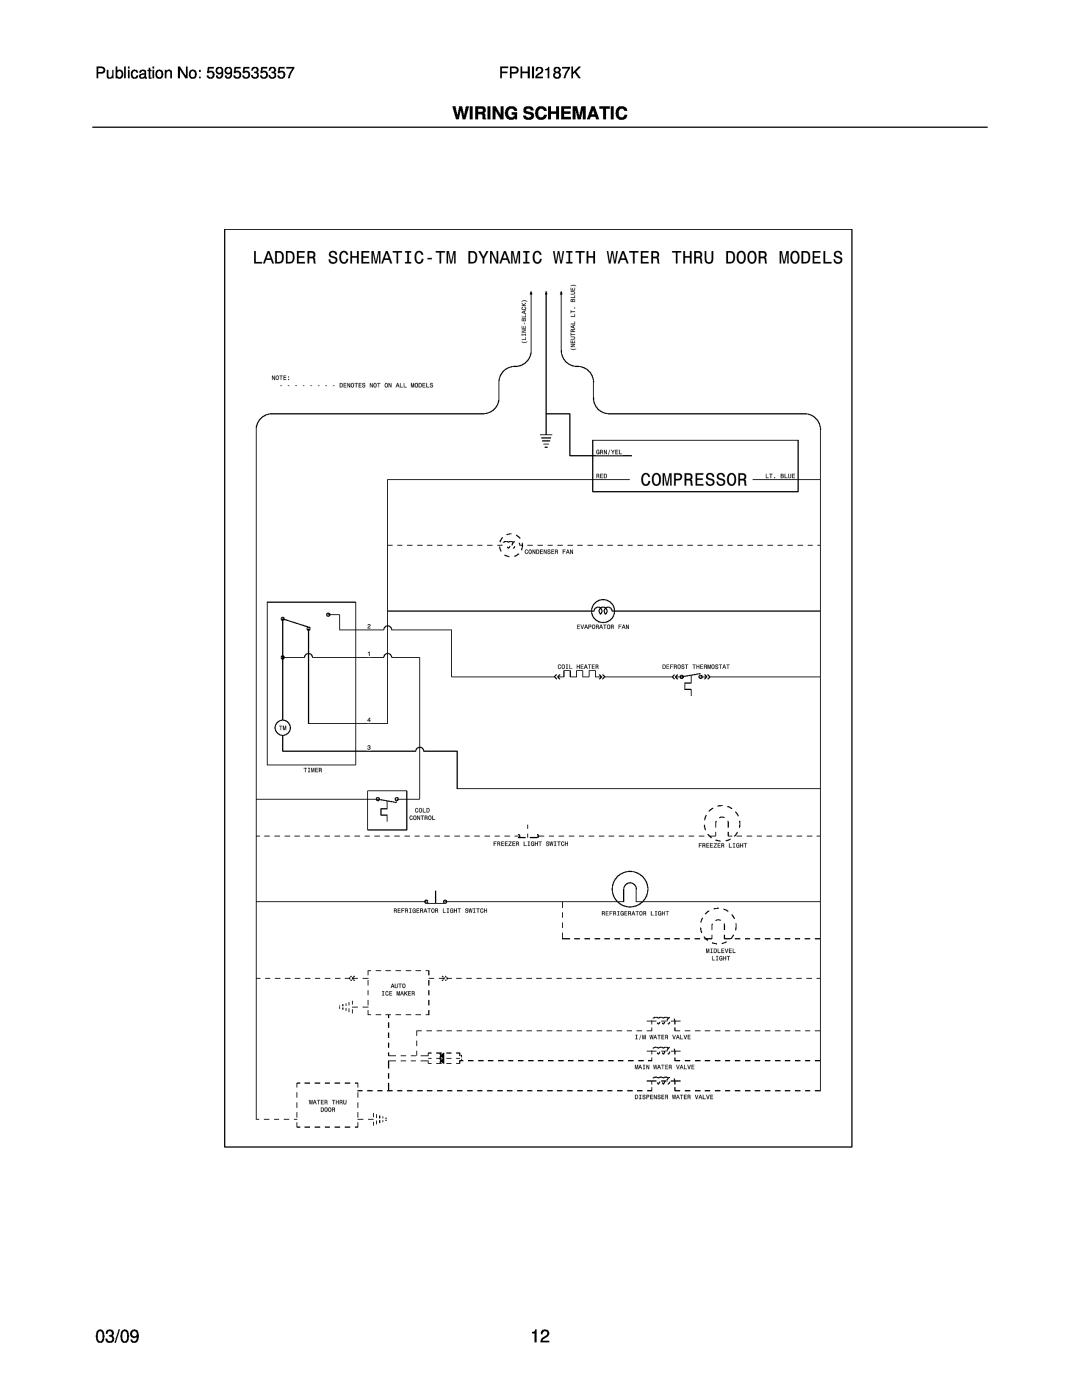 Frigidaire FPHI2187K installation instructions Wiring Schematic, 03/09 